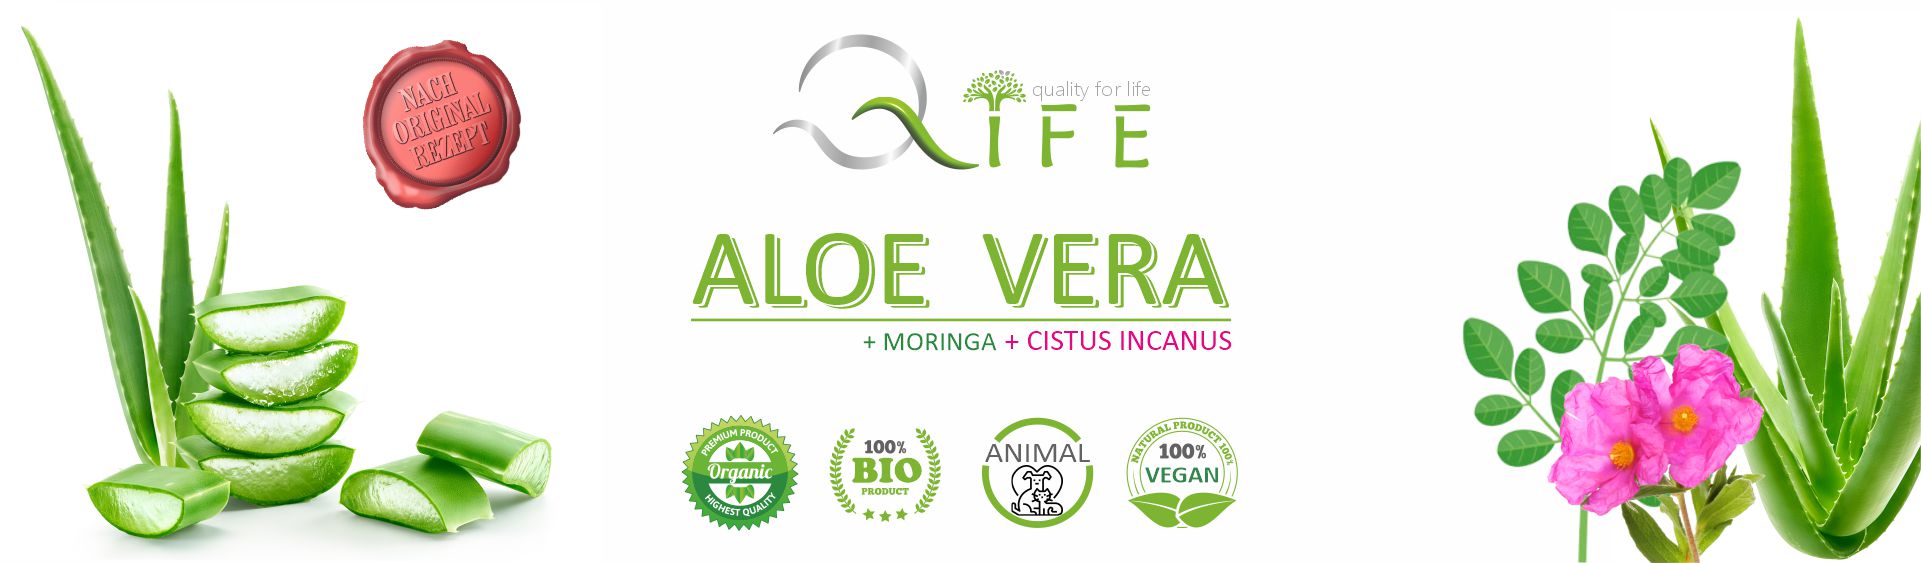 Aloe Vera Cistus Incanus Moringa